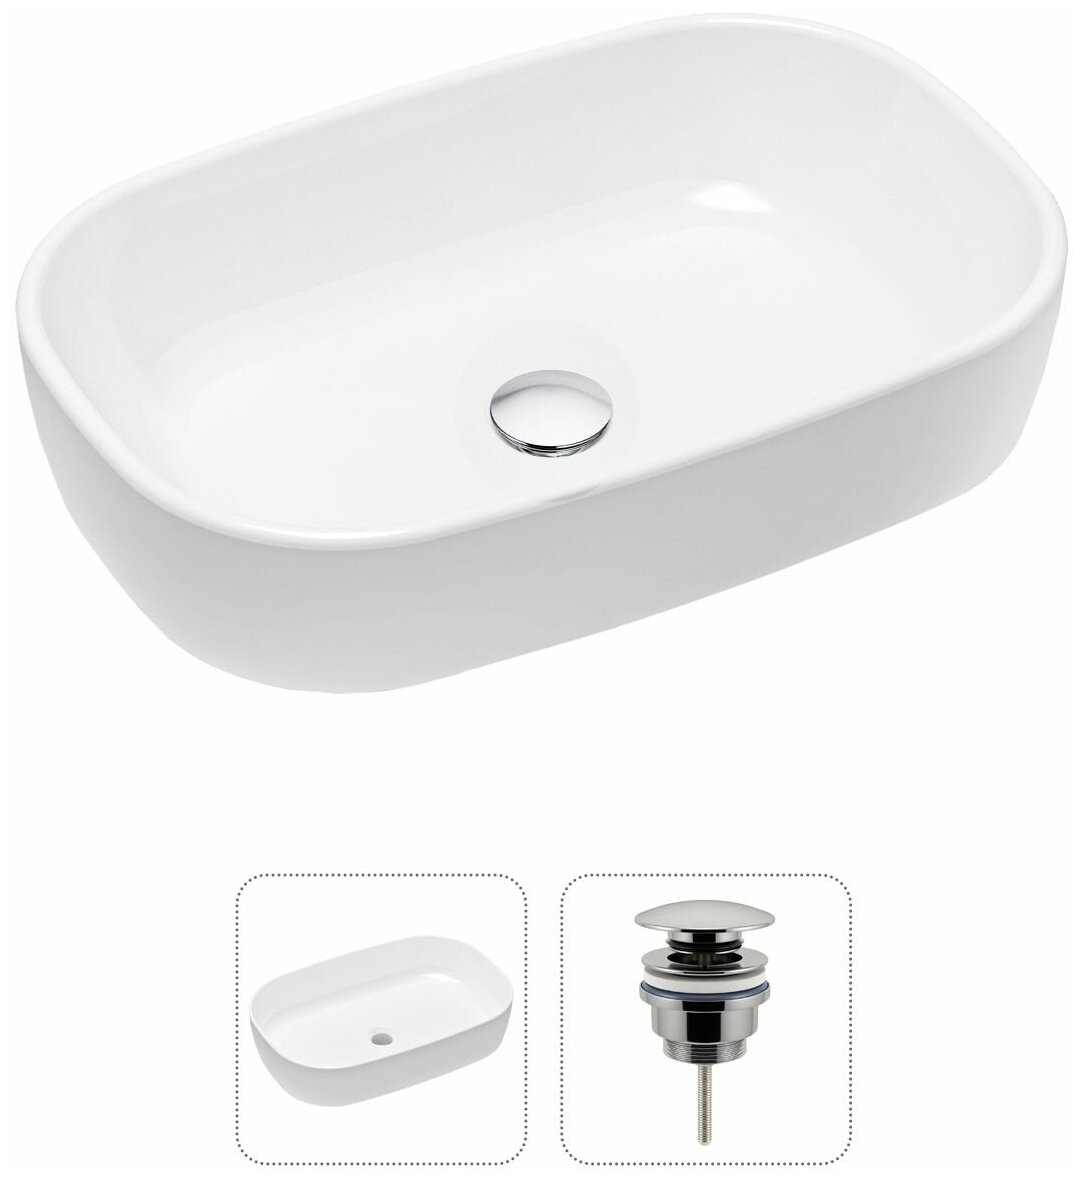 Комплект 2 в 1 Lavinia Boho Bathroom Sink 21520799: накладная фарфоровая раковина 54 см, донный клапан